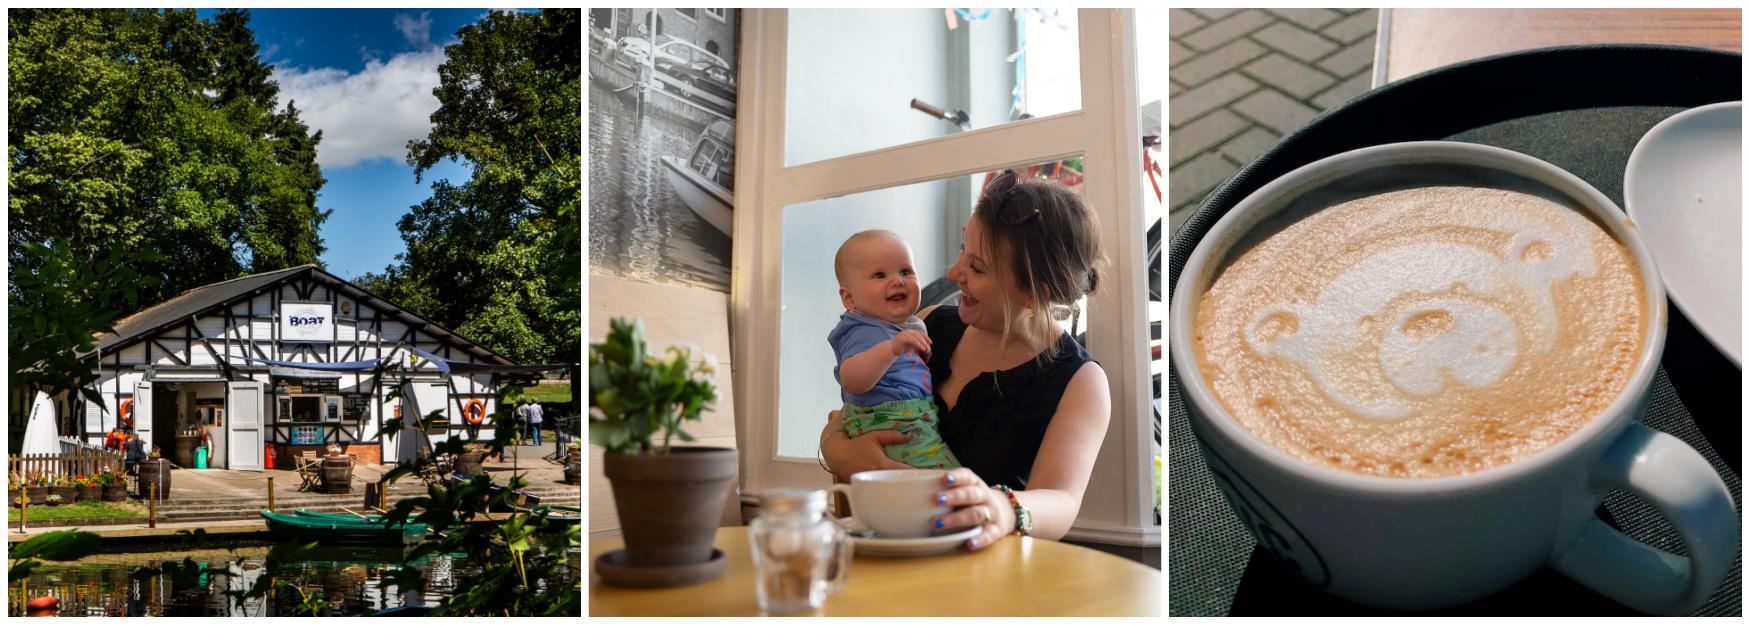 Baby friendly cafes Cheltenham